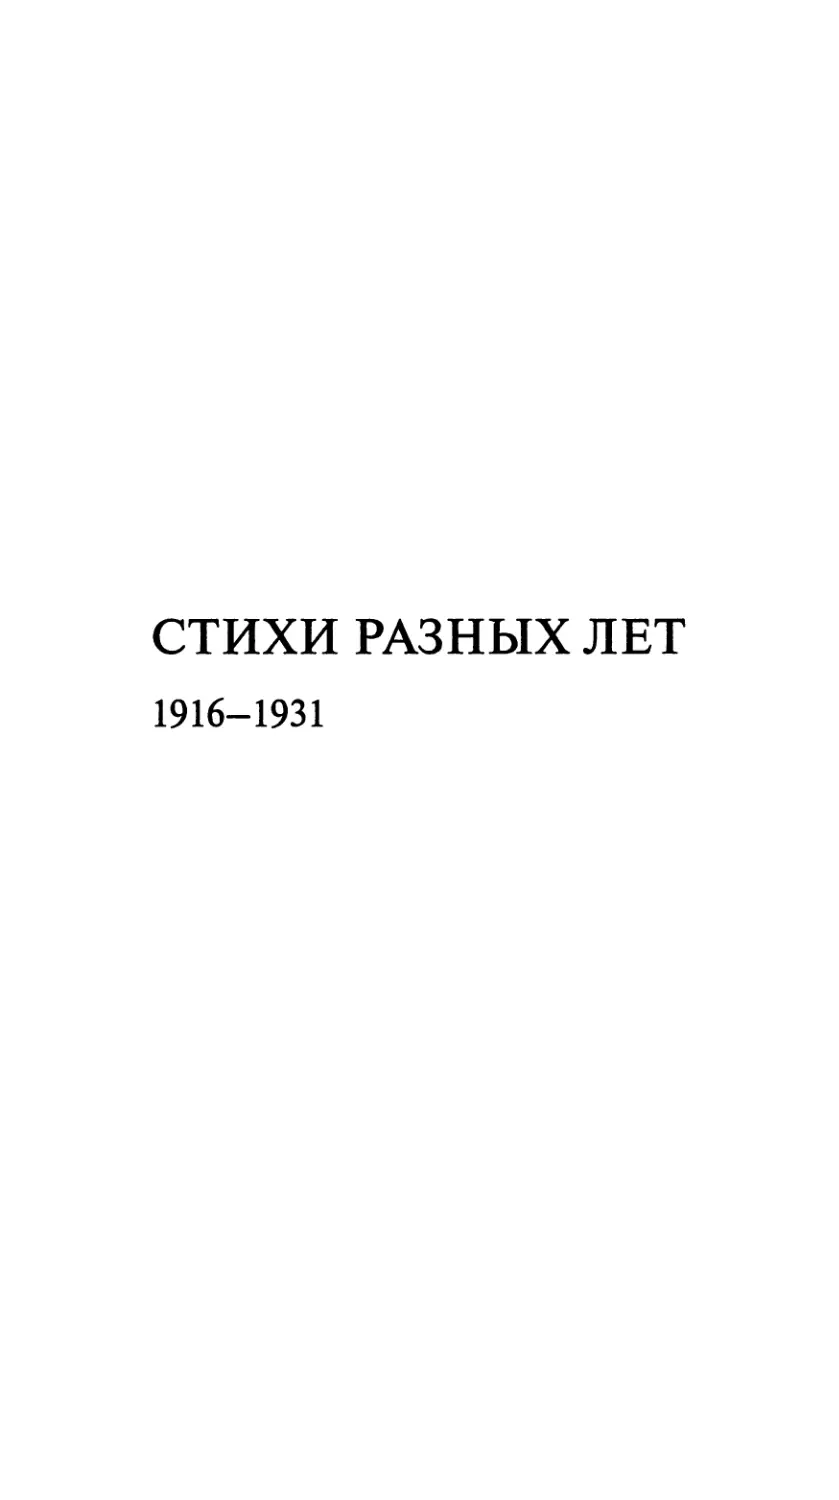 Стихи разных лет. 1916-1931